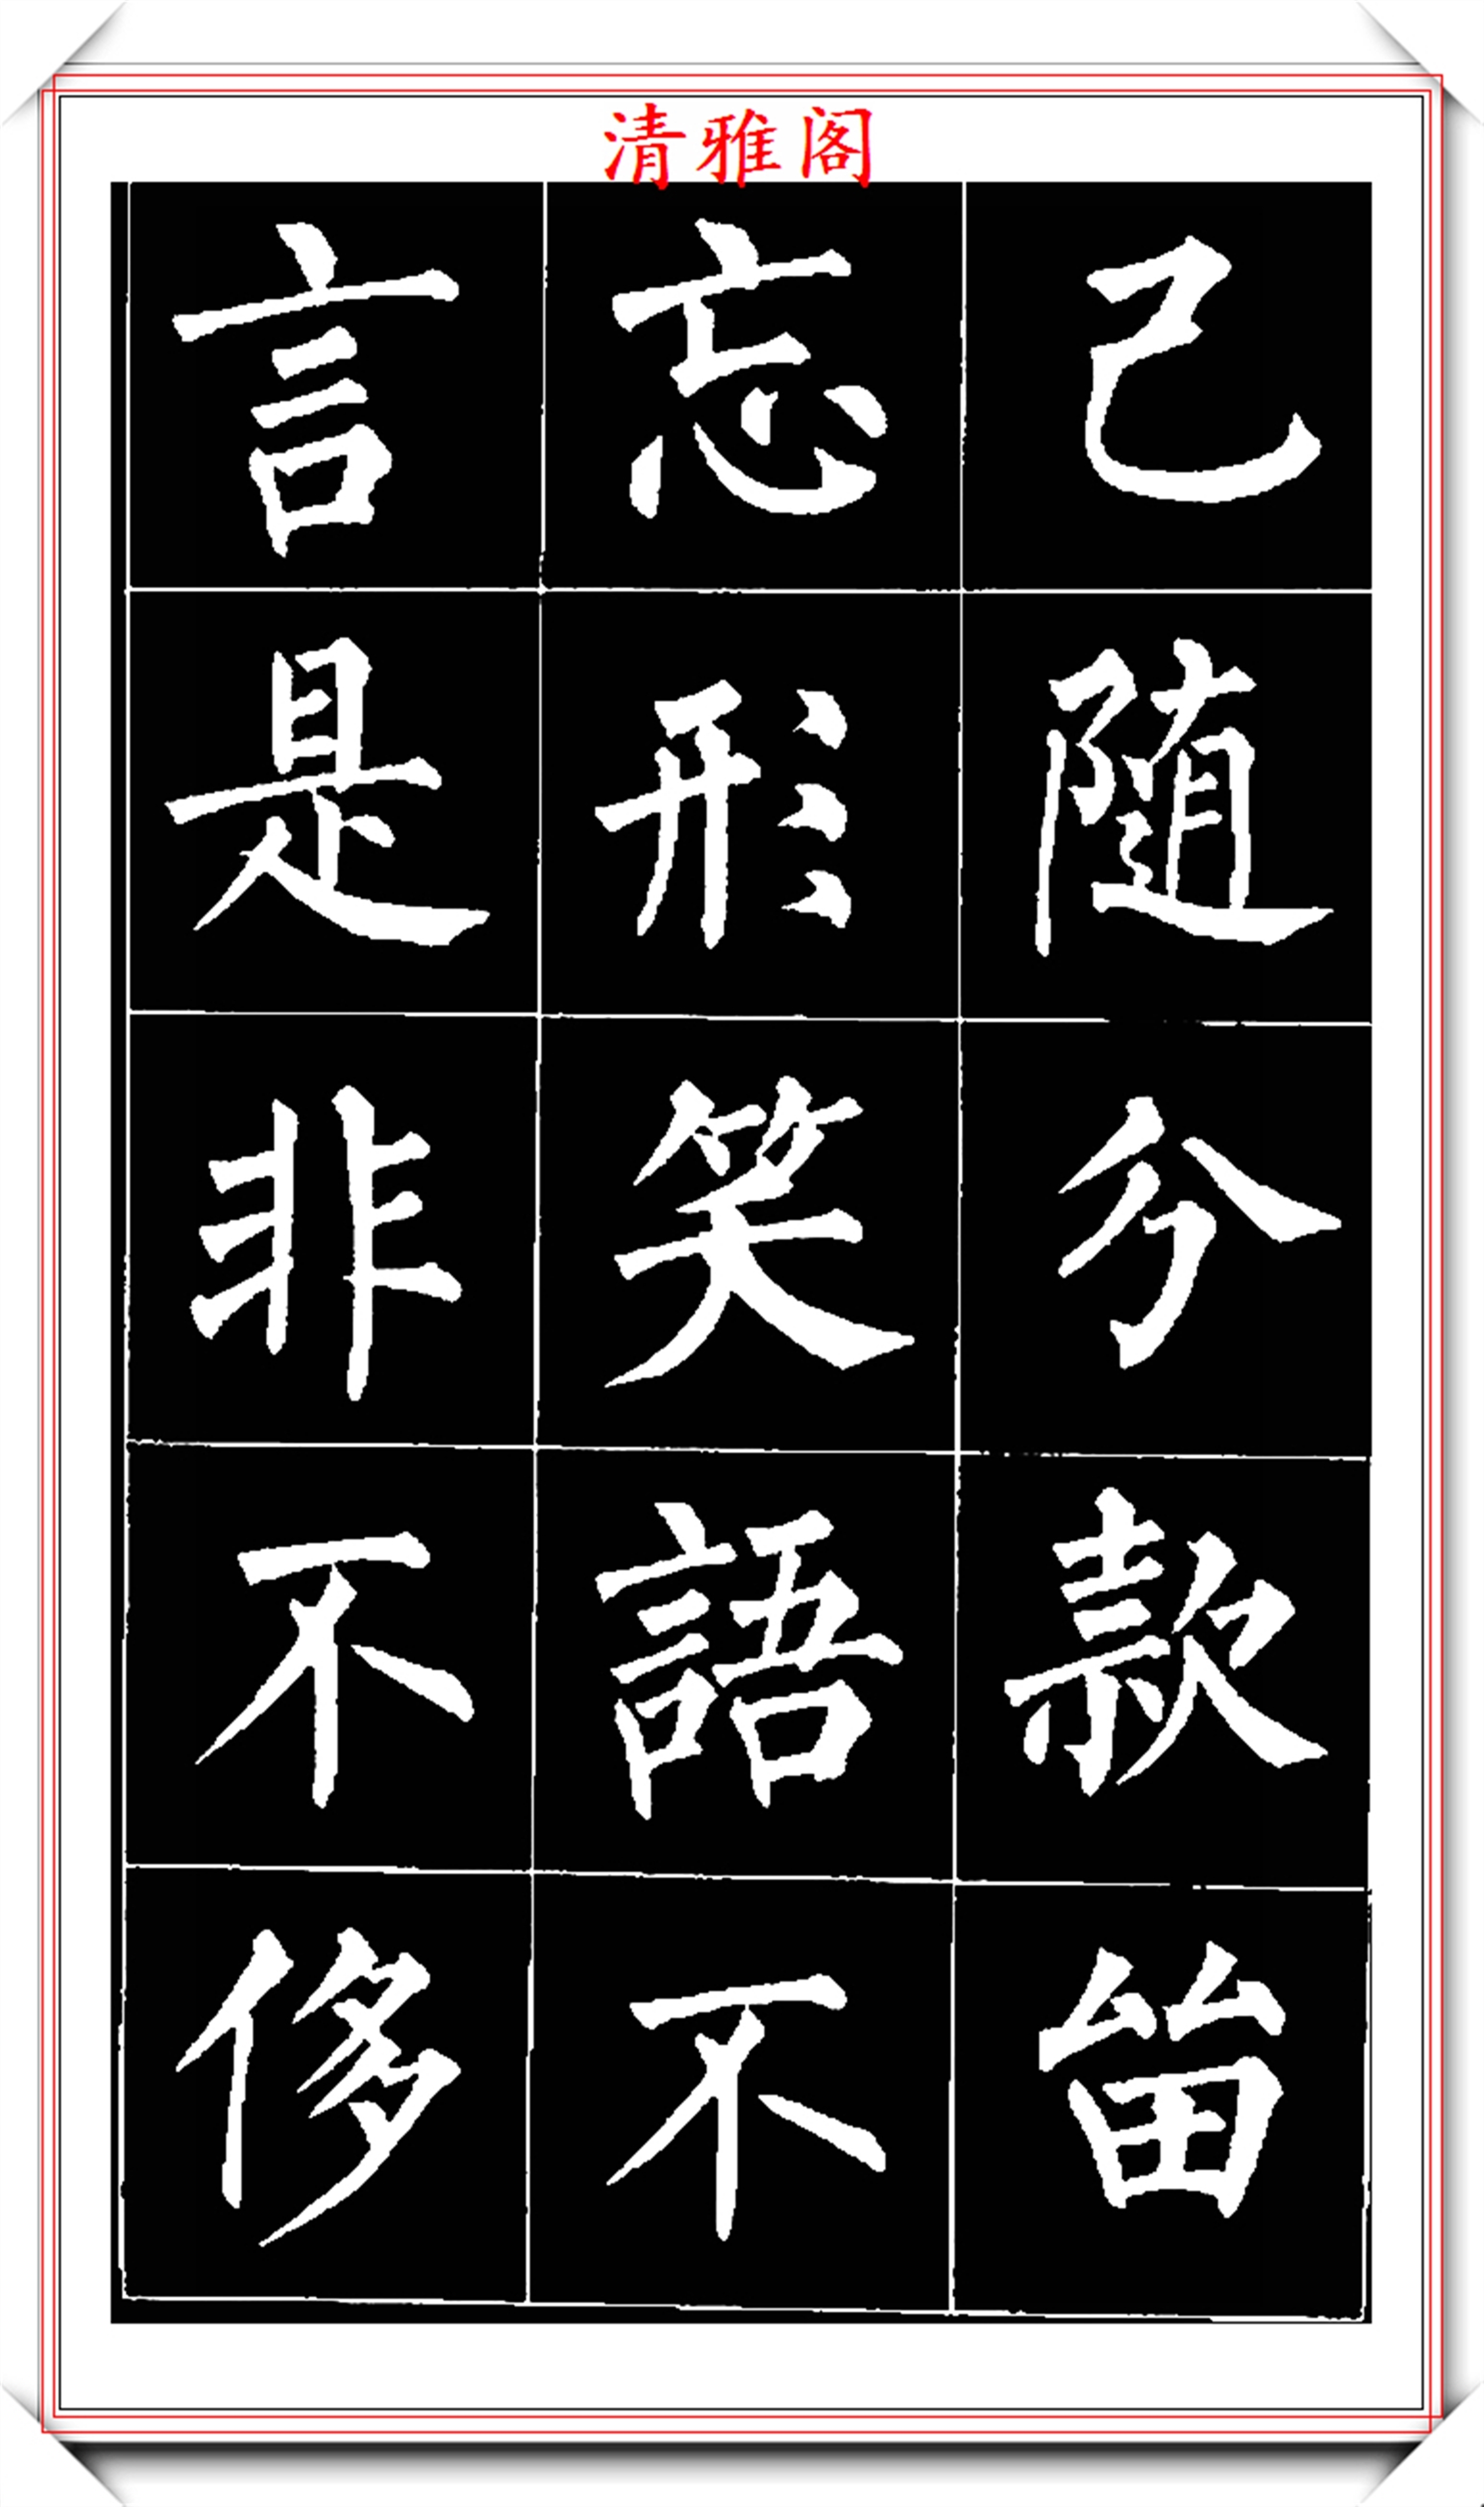 柳体楷书用笔特点主要是方圆兼备,以方为主,横,捺,提的起笔多用方